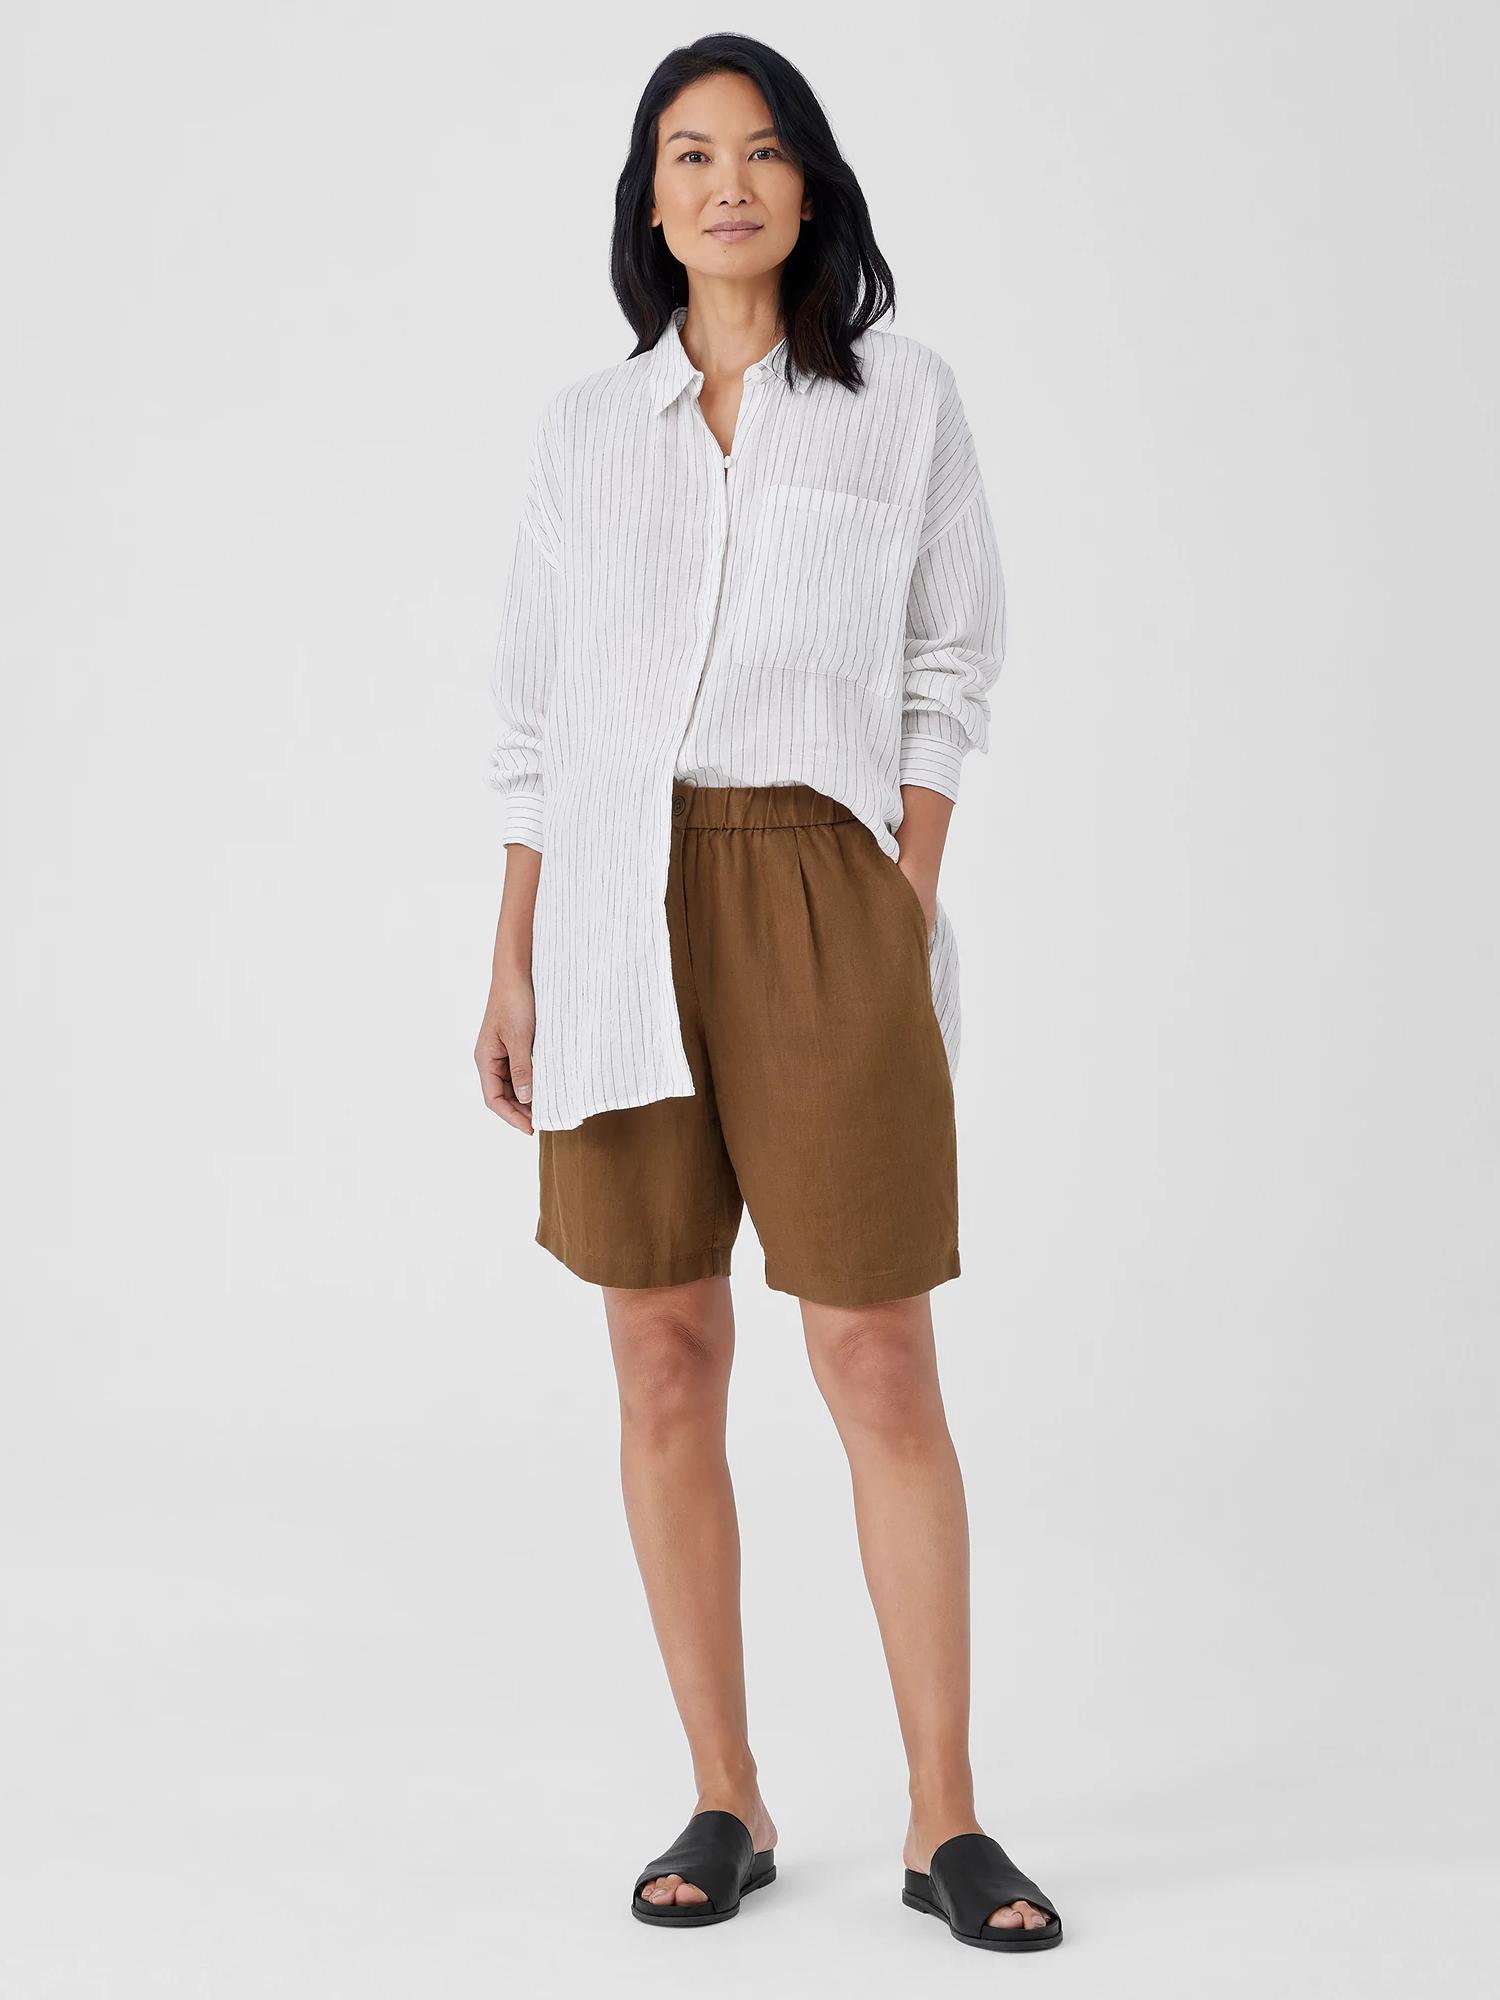 https://cdna.lystit.com/photos/eileenfisher/699082b1/eileen-fisher-White-Organic-Linen-Shorts.jpeg